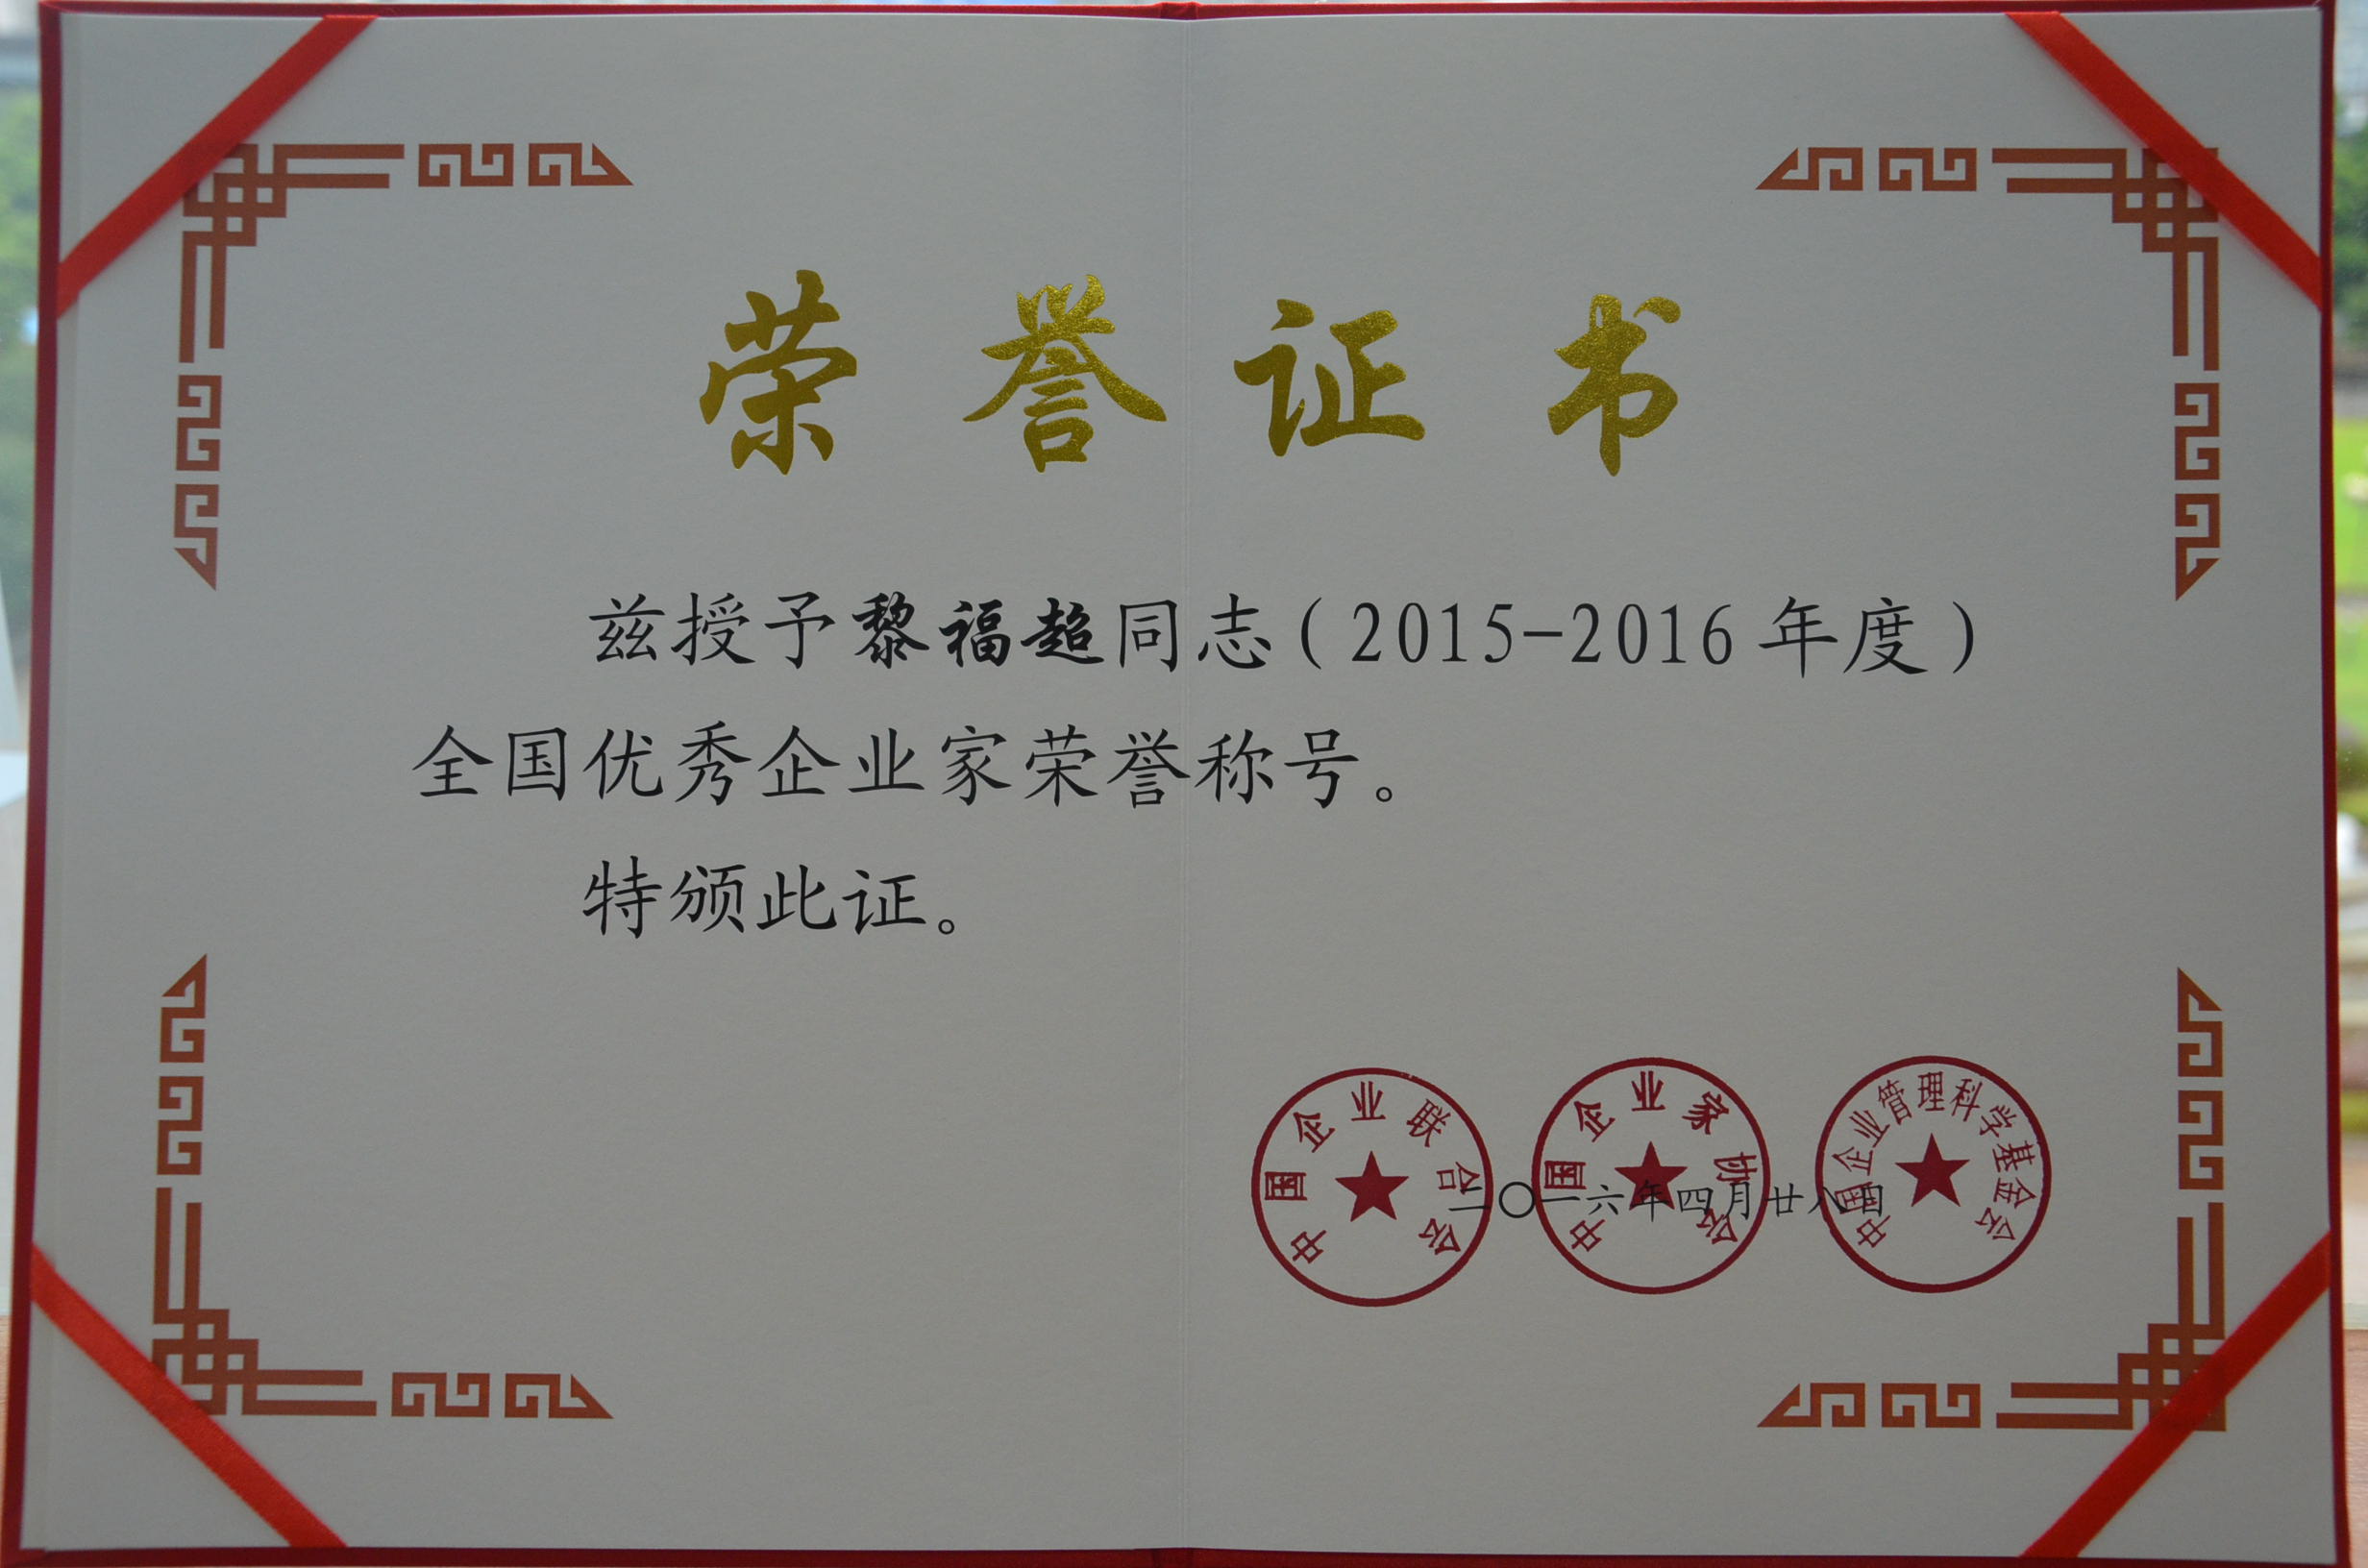 福达集团董事长黎福超荣获“2015-2016年度全国优秀企业家”称号